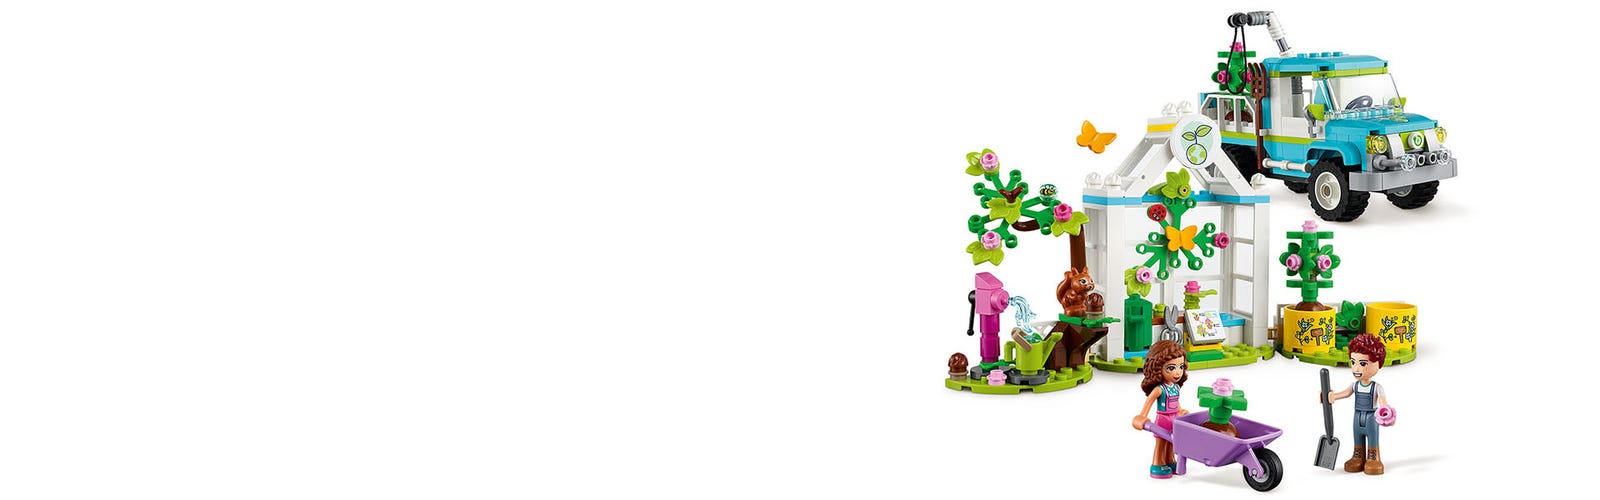 LEGO Friends Veicolo Pianta-Alberi, Set Ispirato alla Natura con Giardino,  Auto e Animali, per Bambini di 6 Anni, 41707